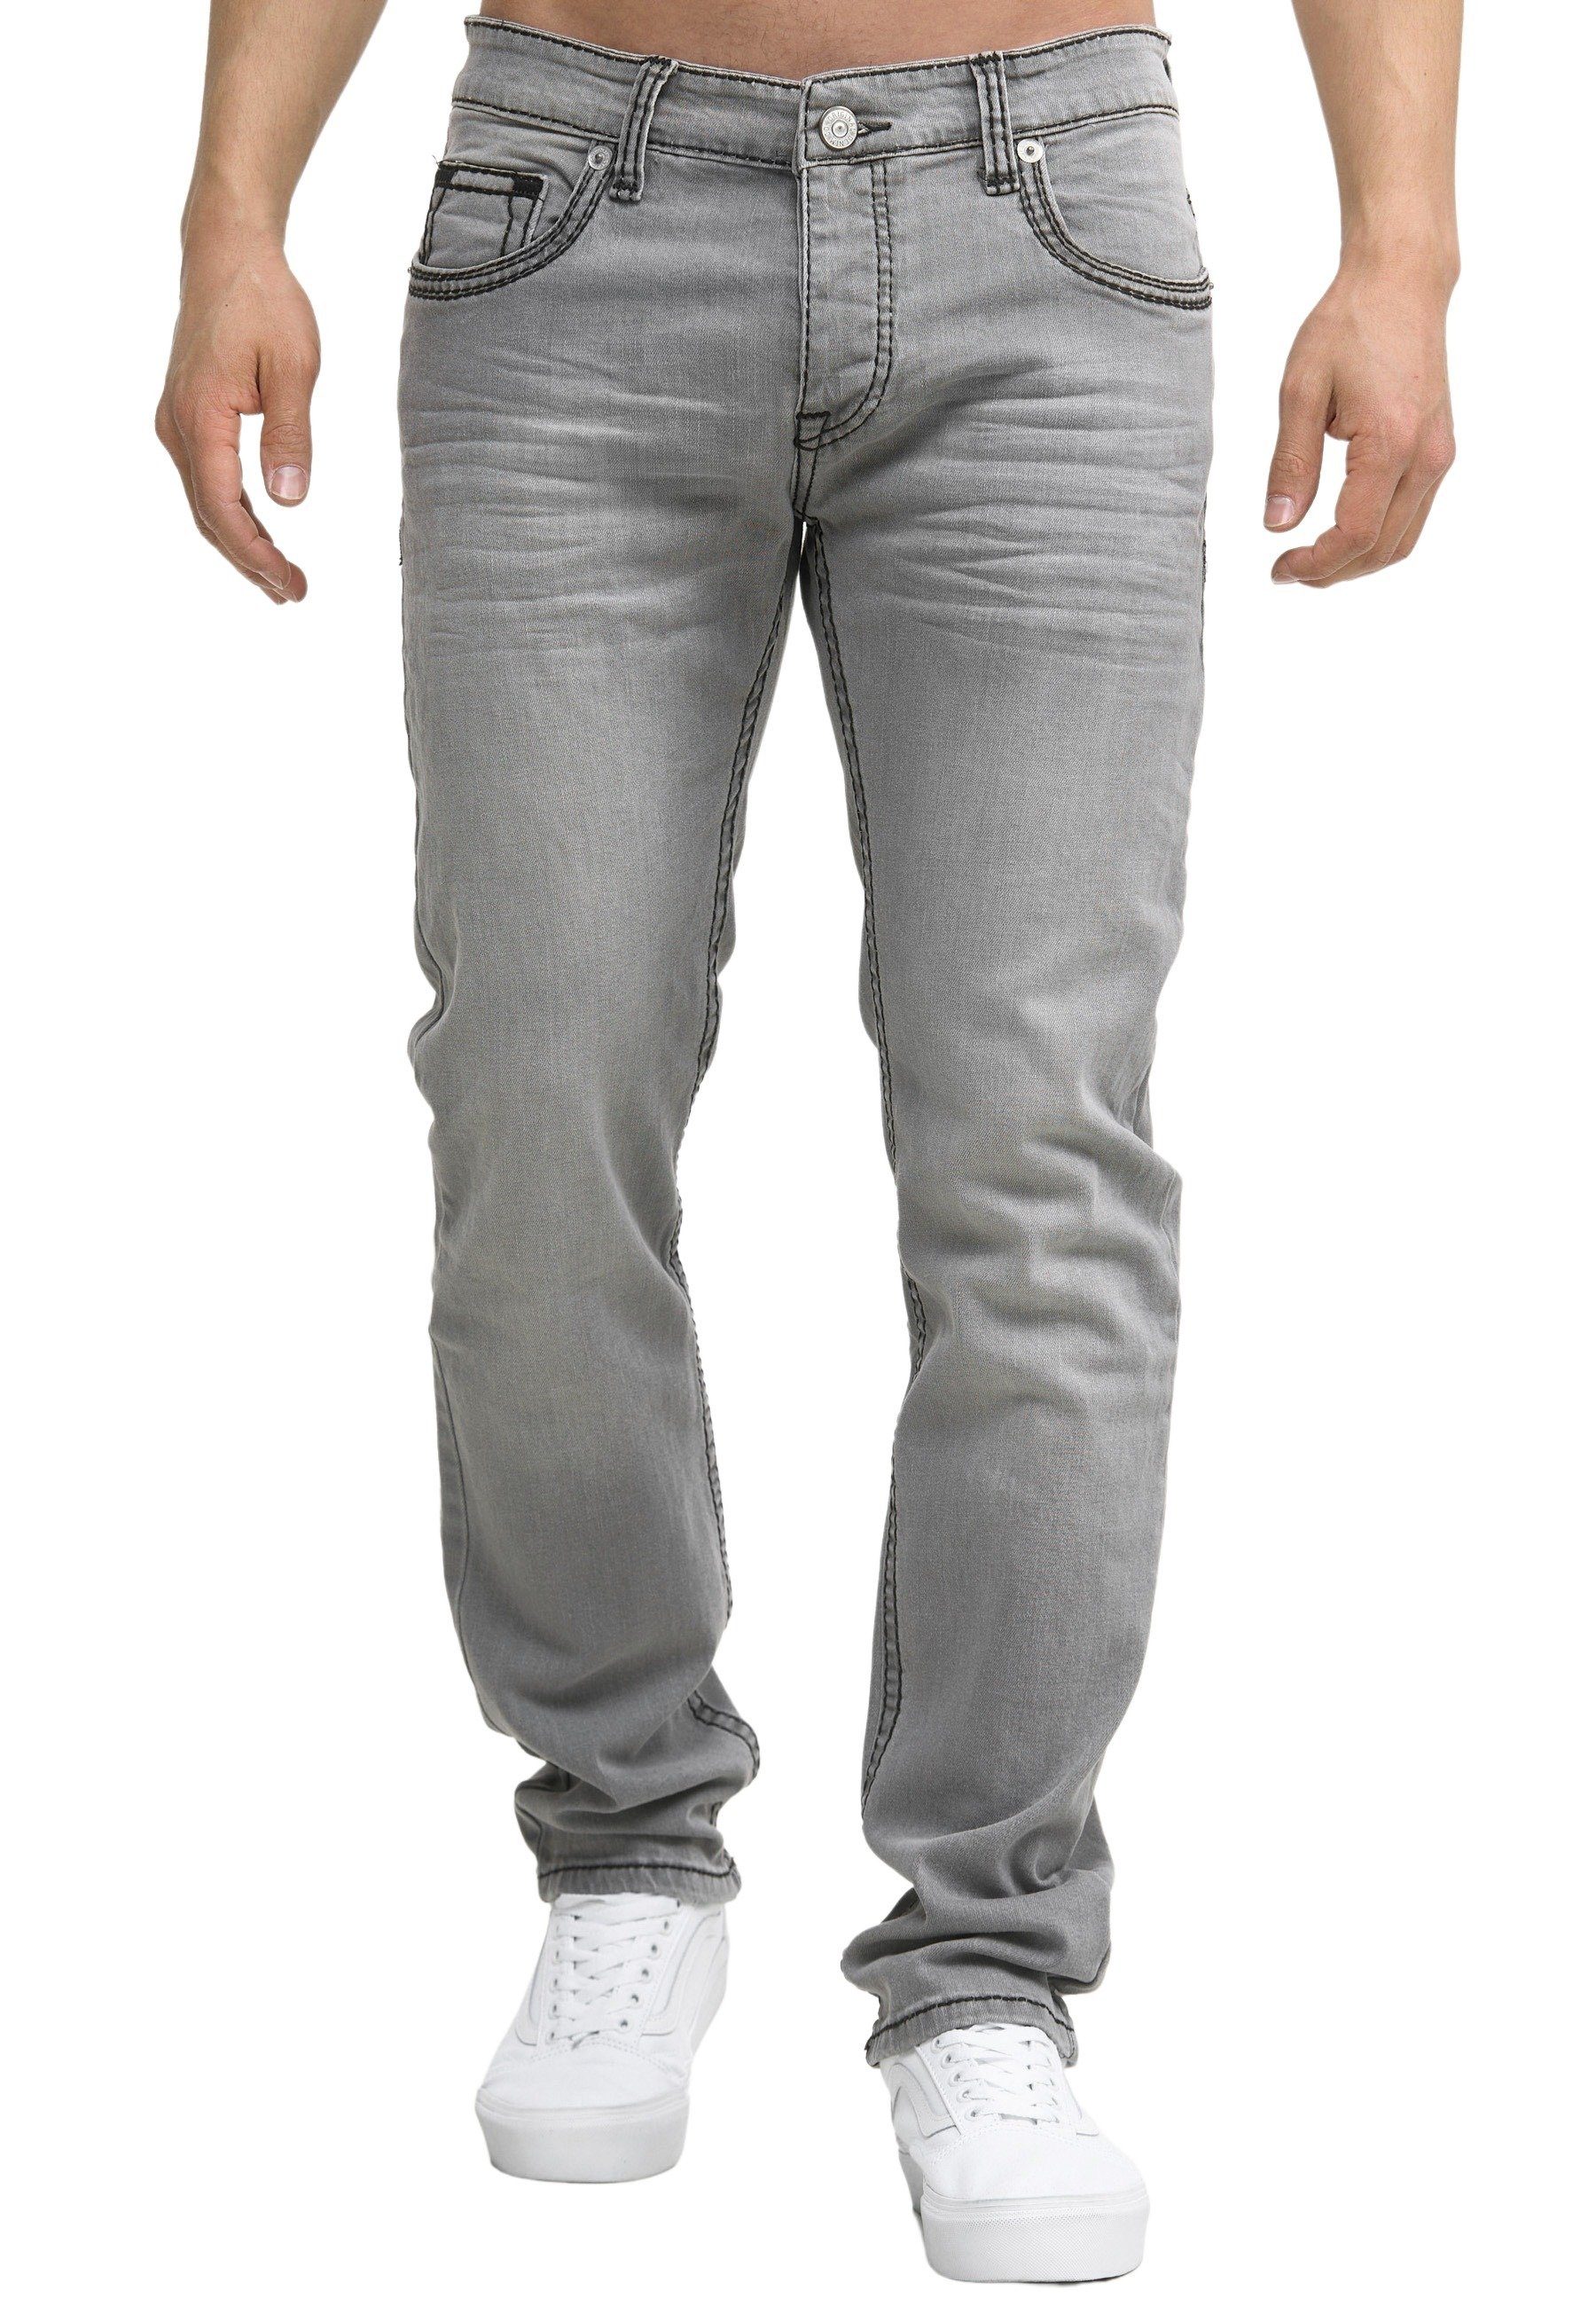 Code47 Five Fit Männer Regular-fit-Jeans grey Pocket Regular Code47 903 Denim Jeans Herren Hose Bootcut